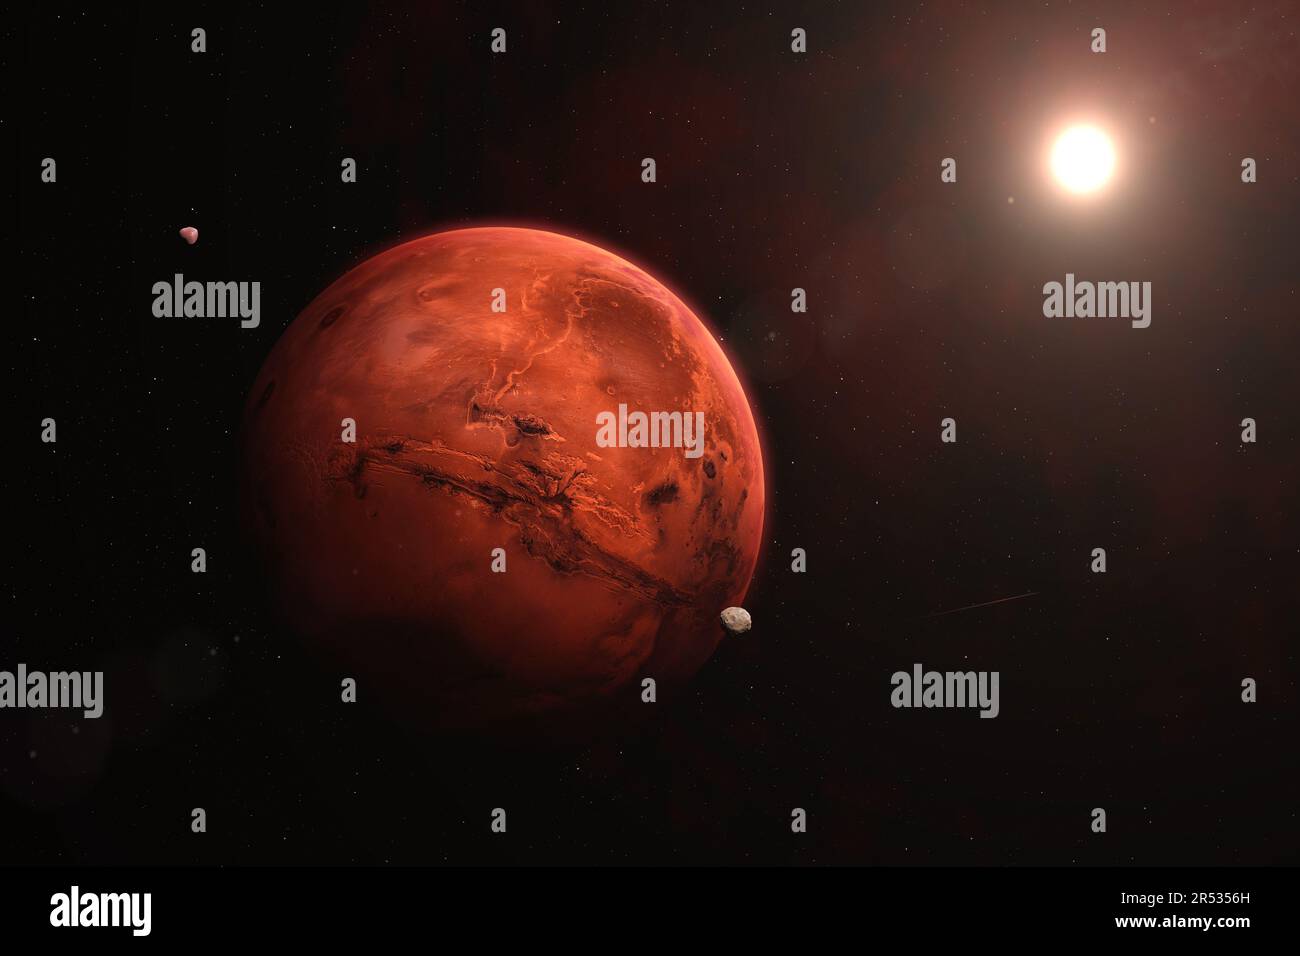 Bellissimo pianeta Marte visto dallo spazio. Vista spaziale di Marte, Phobos, Deimos e Sole. Immagine ad alta risoluzione. Elementi forniti dalla NASA. Foto Stock